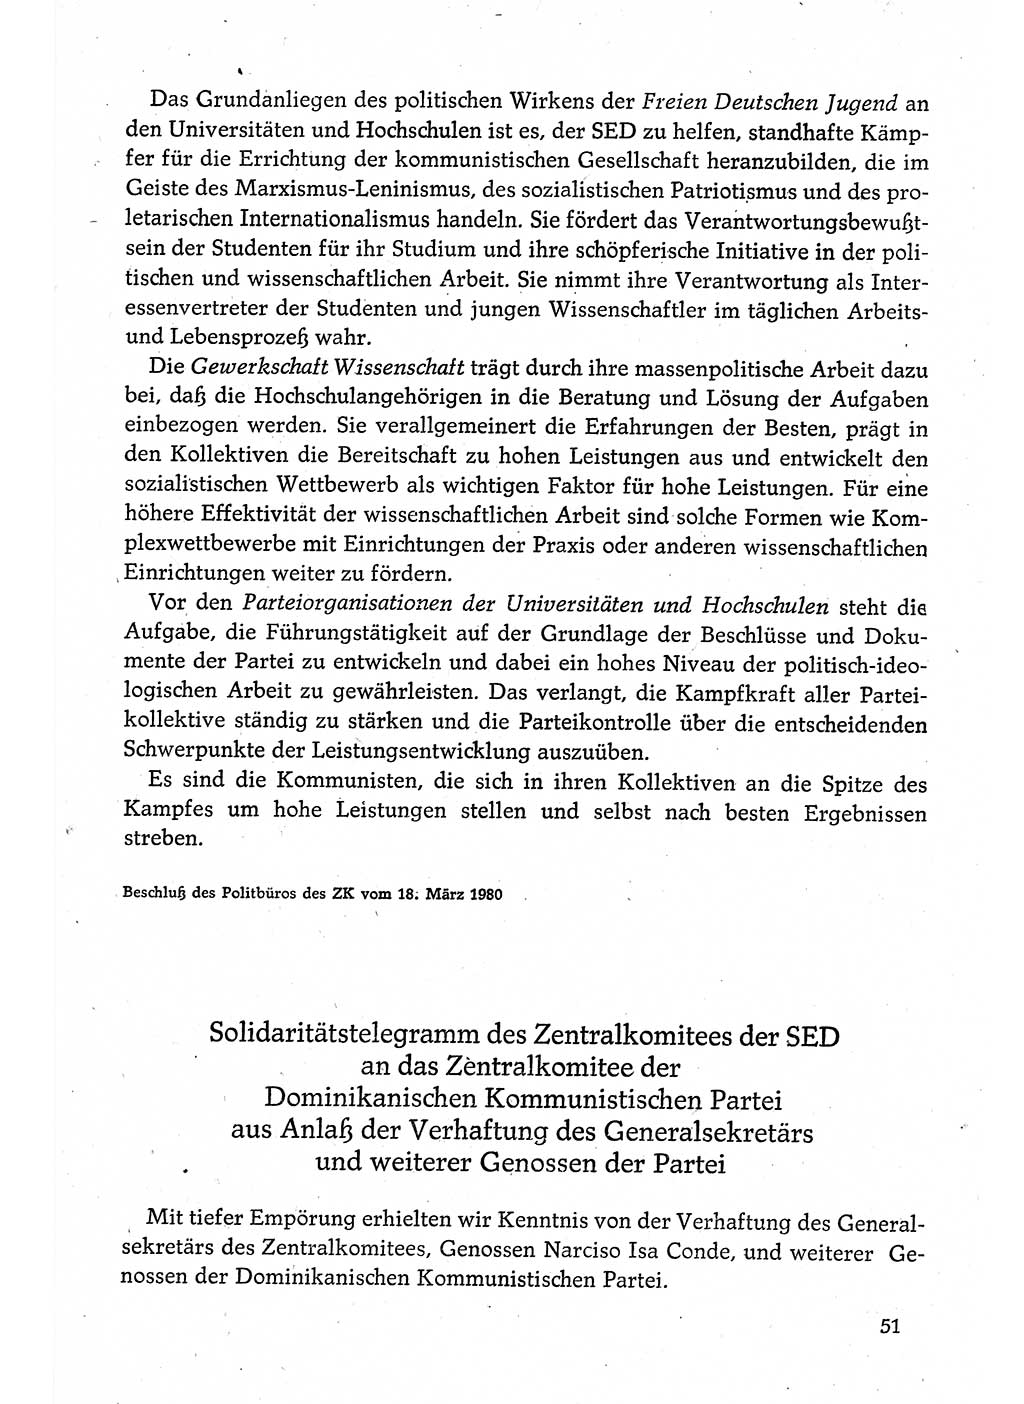 Dokumente der Sozialistischen Einheitspartei Deutschlands (SED) [Deutsche Demokratische Republik (DDR)] 1980-1981, Seite 51 (Dok. SED DDR 1980-1981, S. 51)